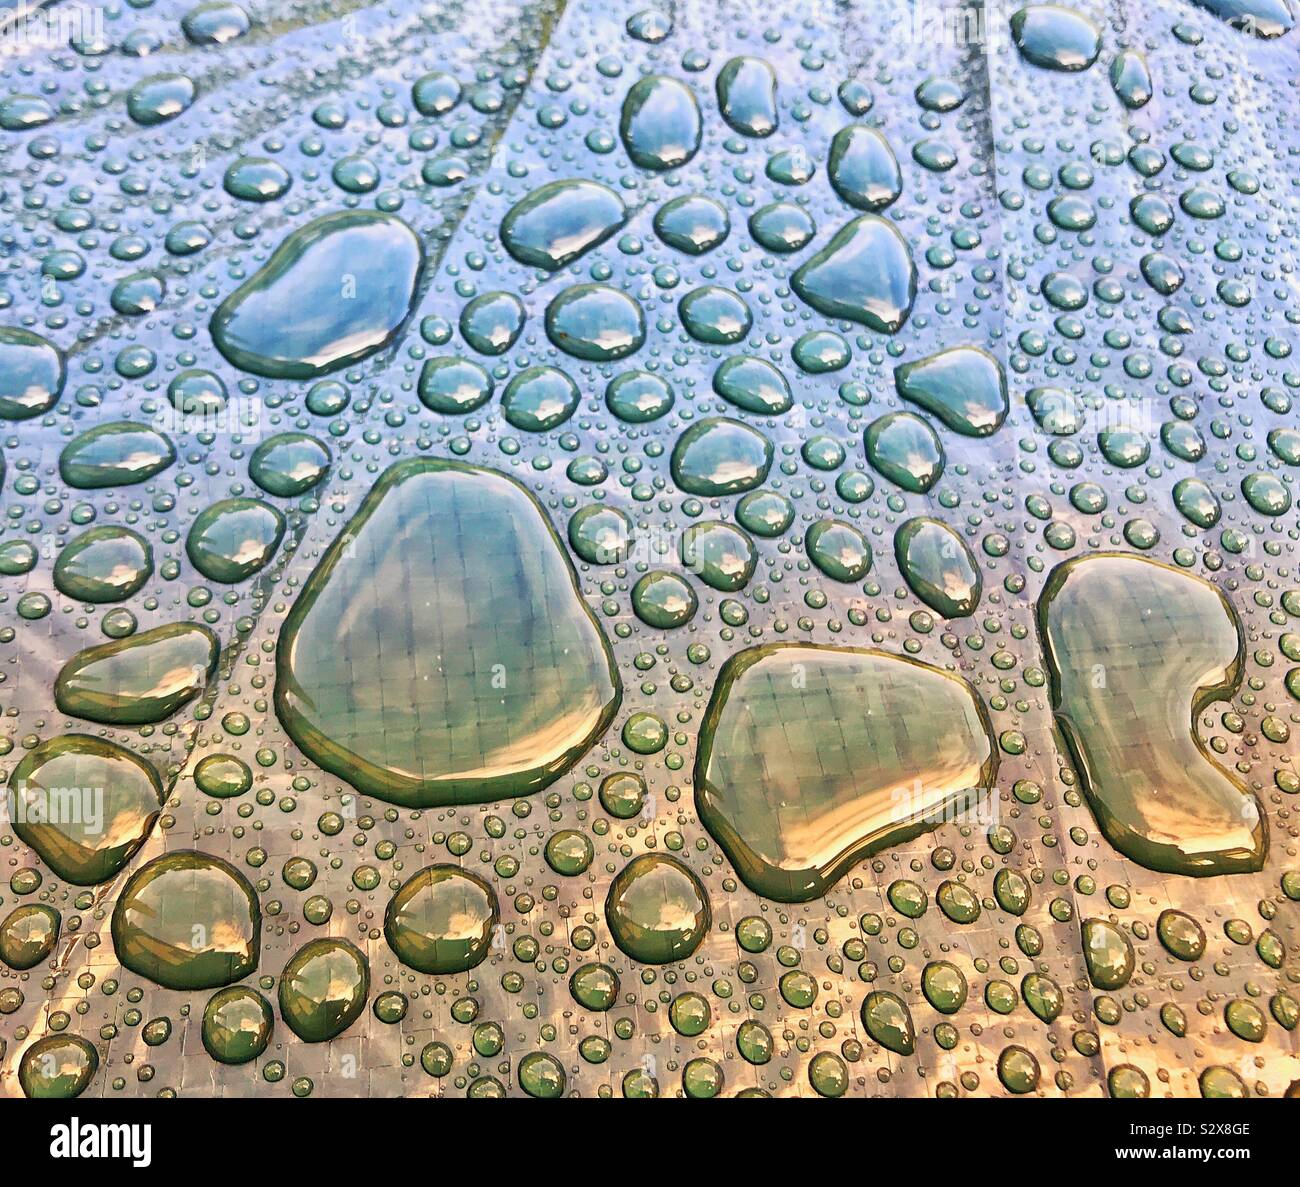 Globuli Regen auf eine glänzende Oberfläche nach einem Sturm Stockfoto